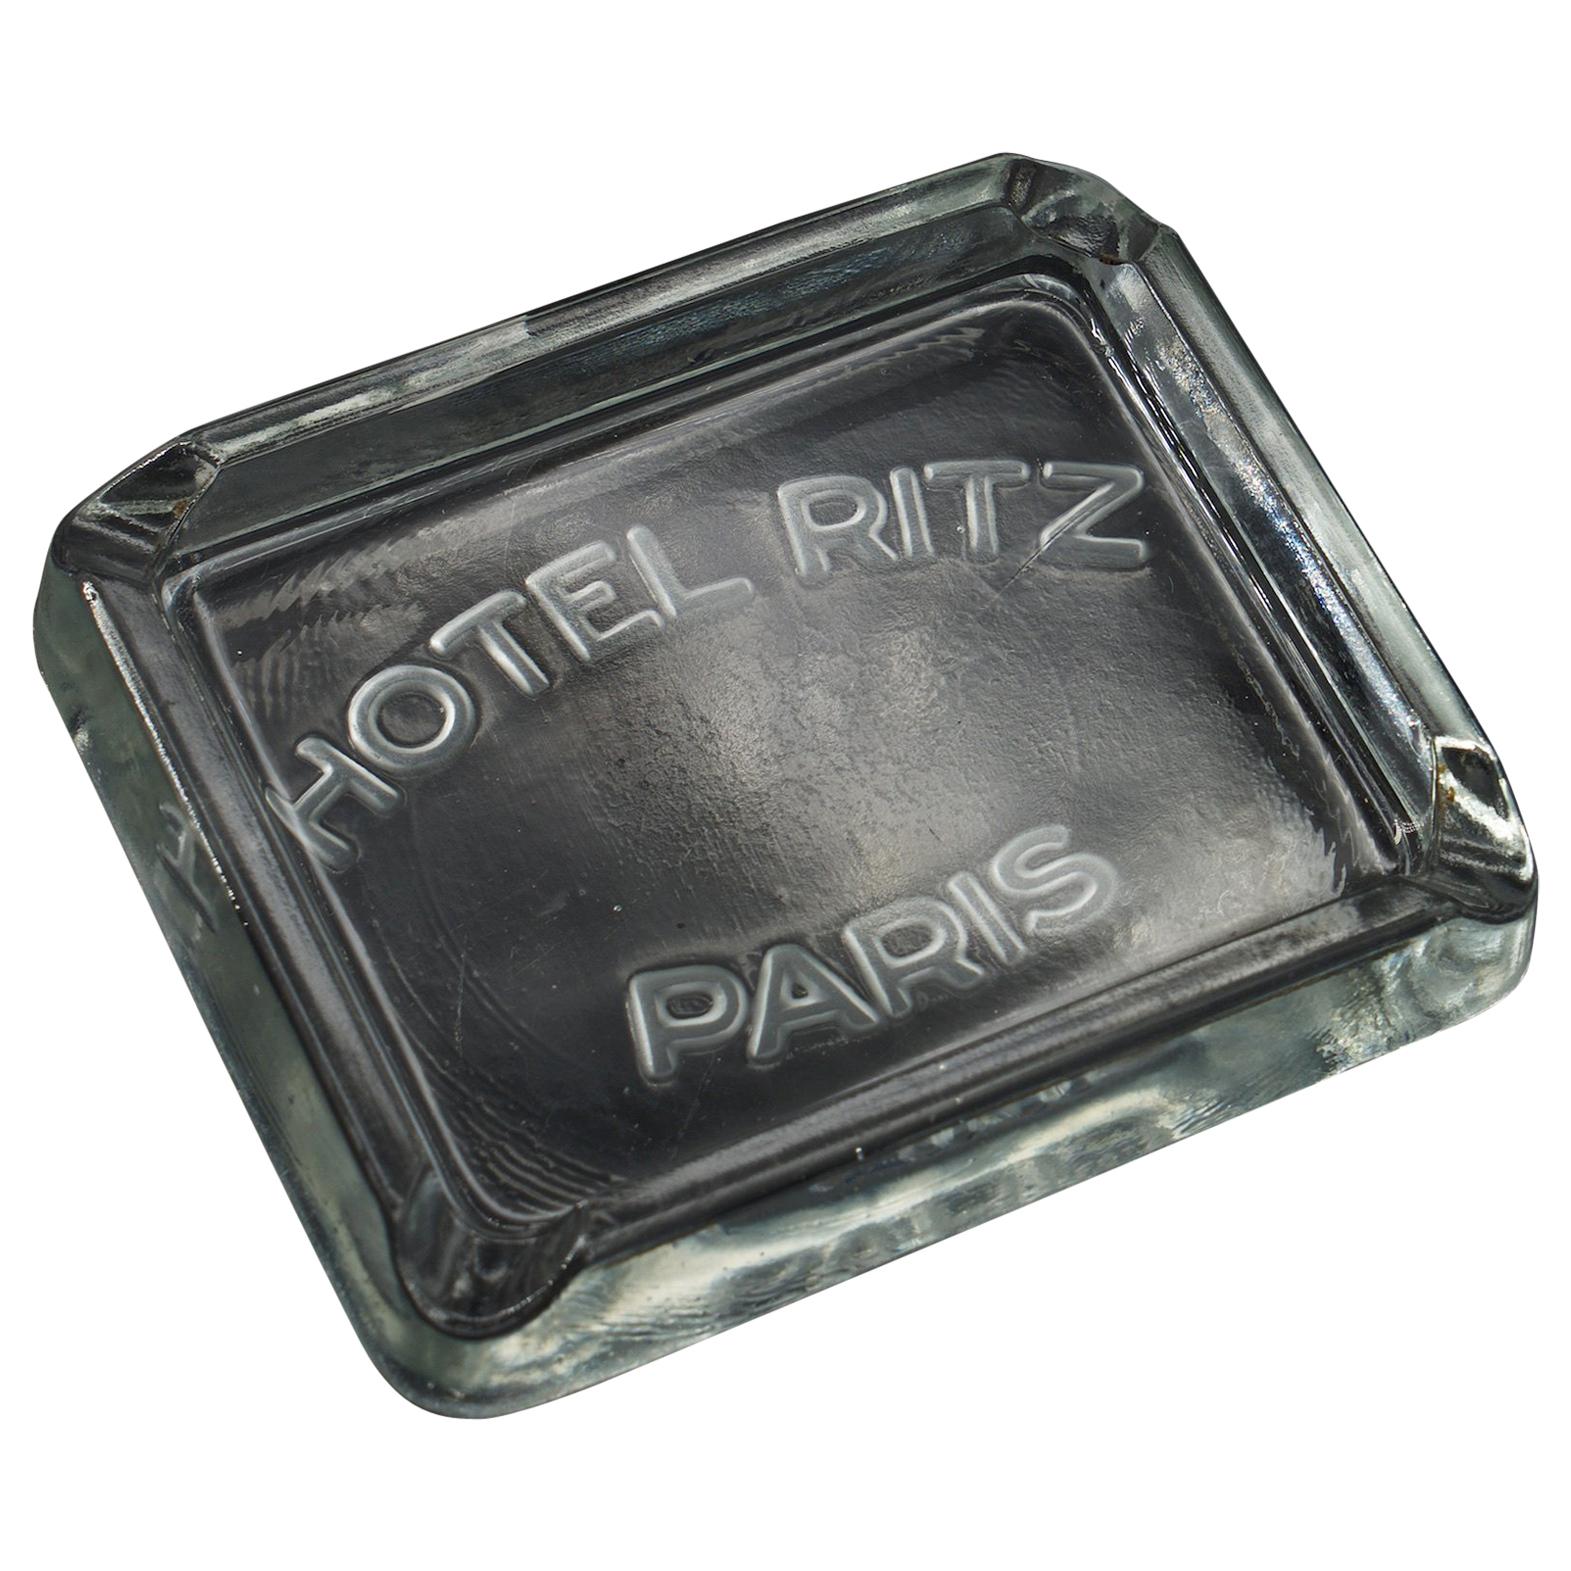 Rare 1930s Hotel Ritz Paris molded Glass Cigarette Ashtray Luxury Relic Chanel